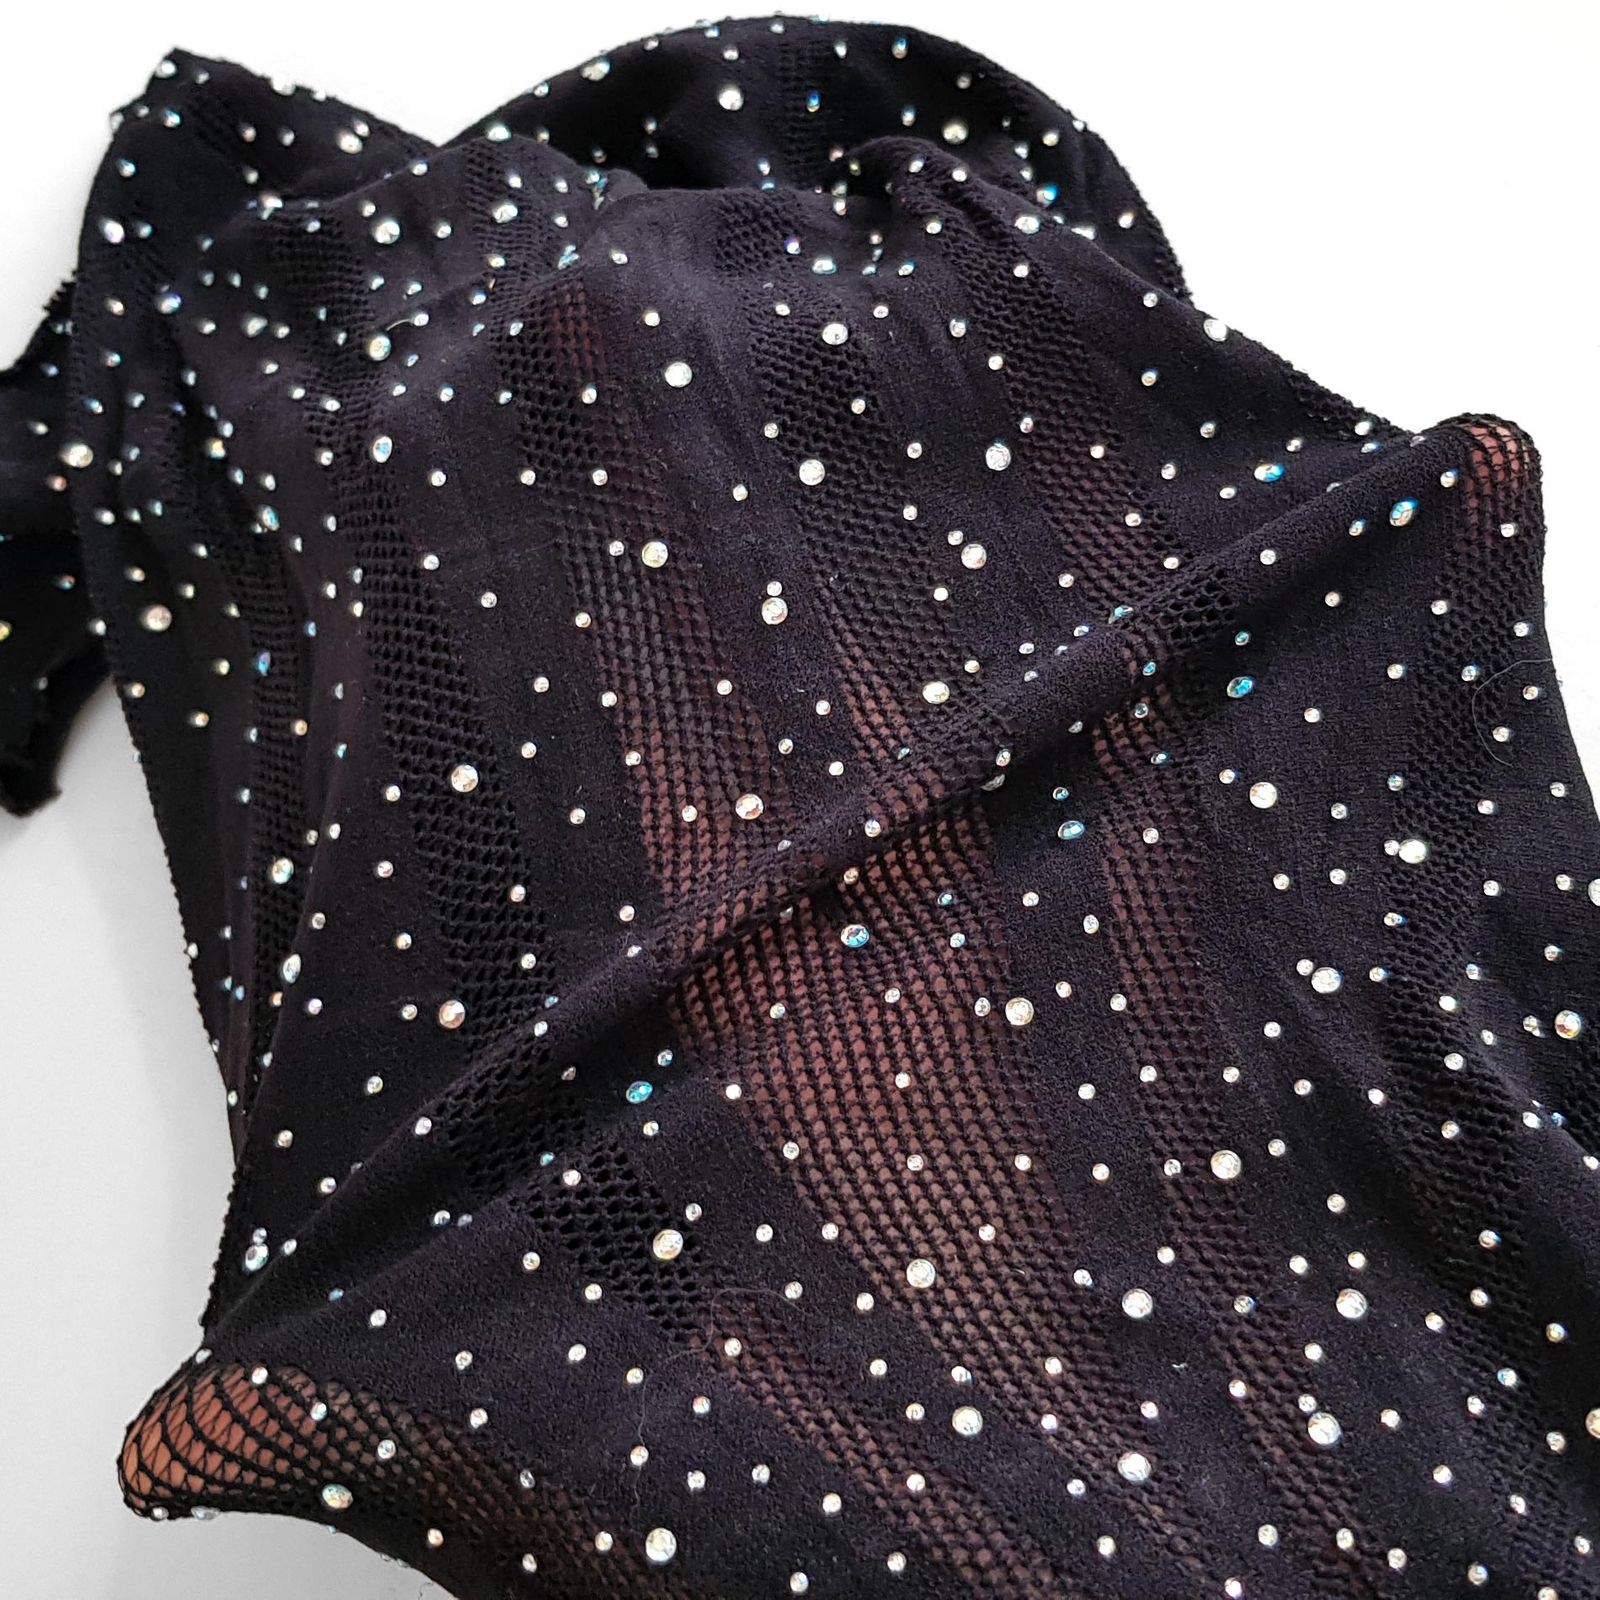 لباس خواب زنانه ماییلدا مدل نگین دار فانتزی کد 4860-7188 رنگ مشکی -  - 4